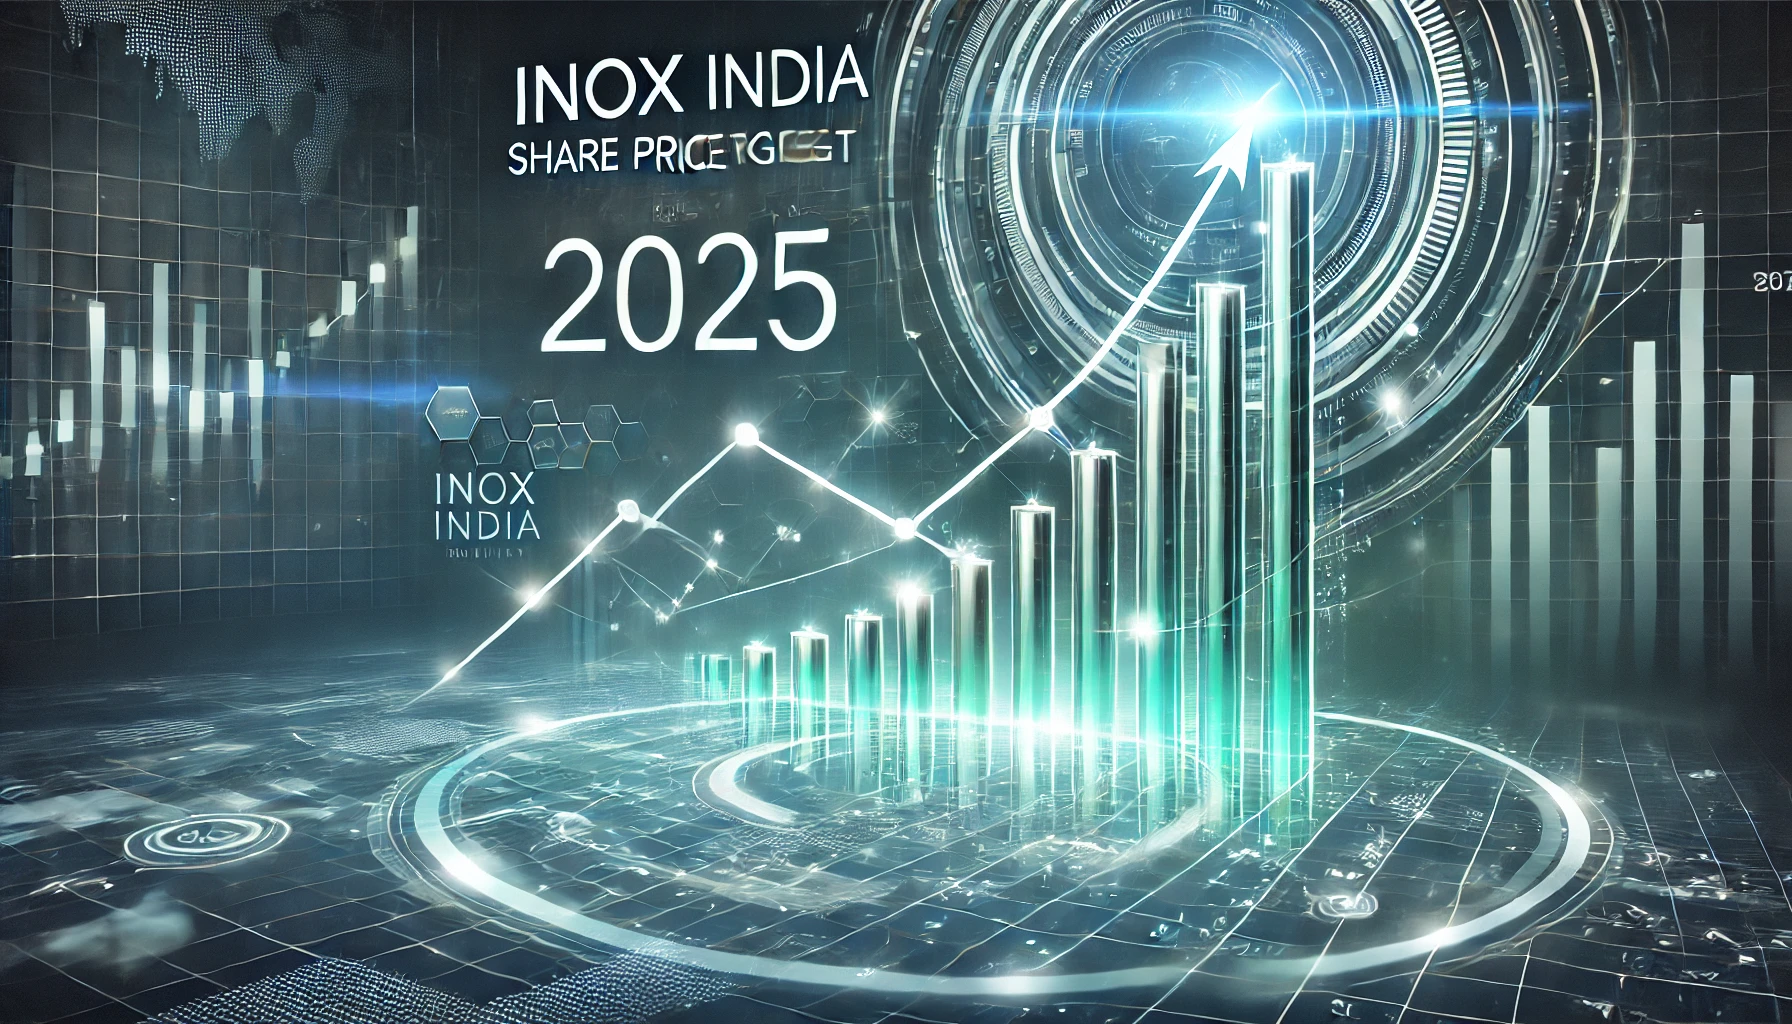 Inox India Share Price Target 2025